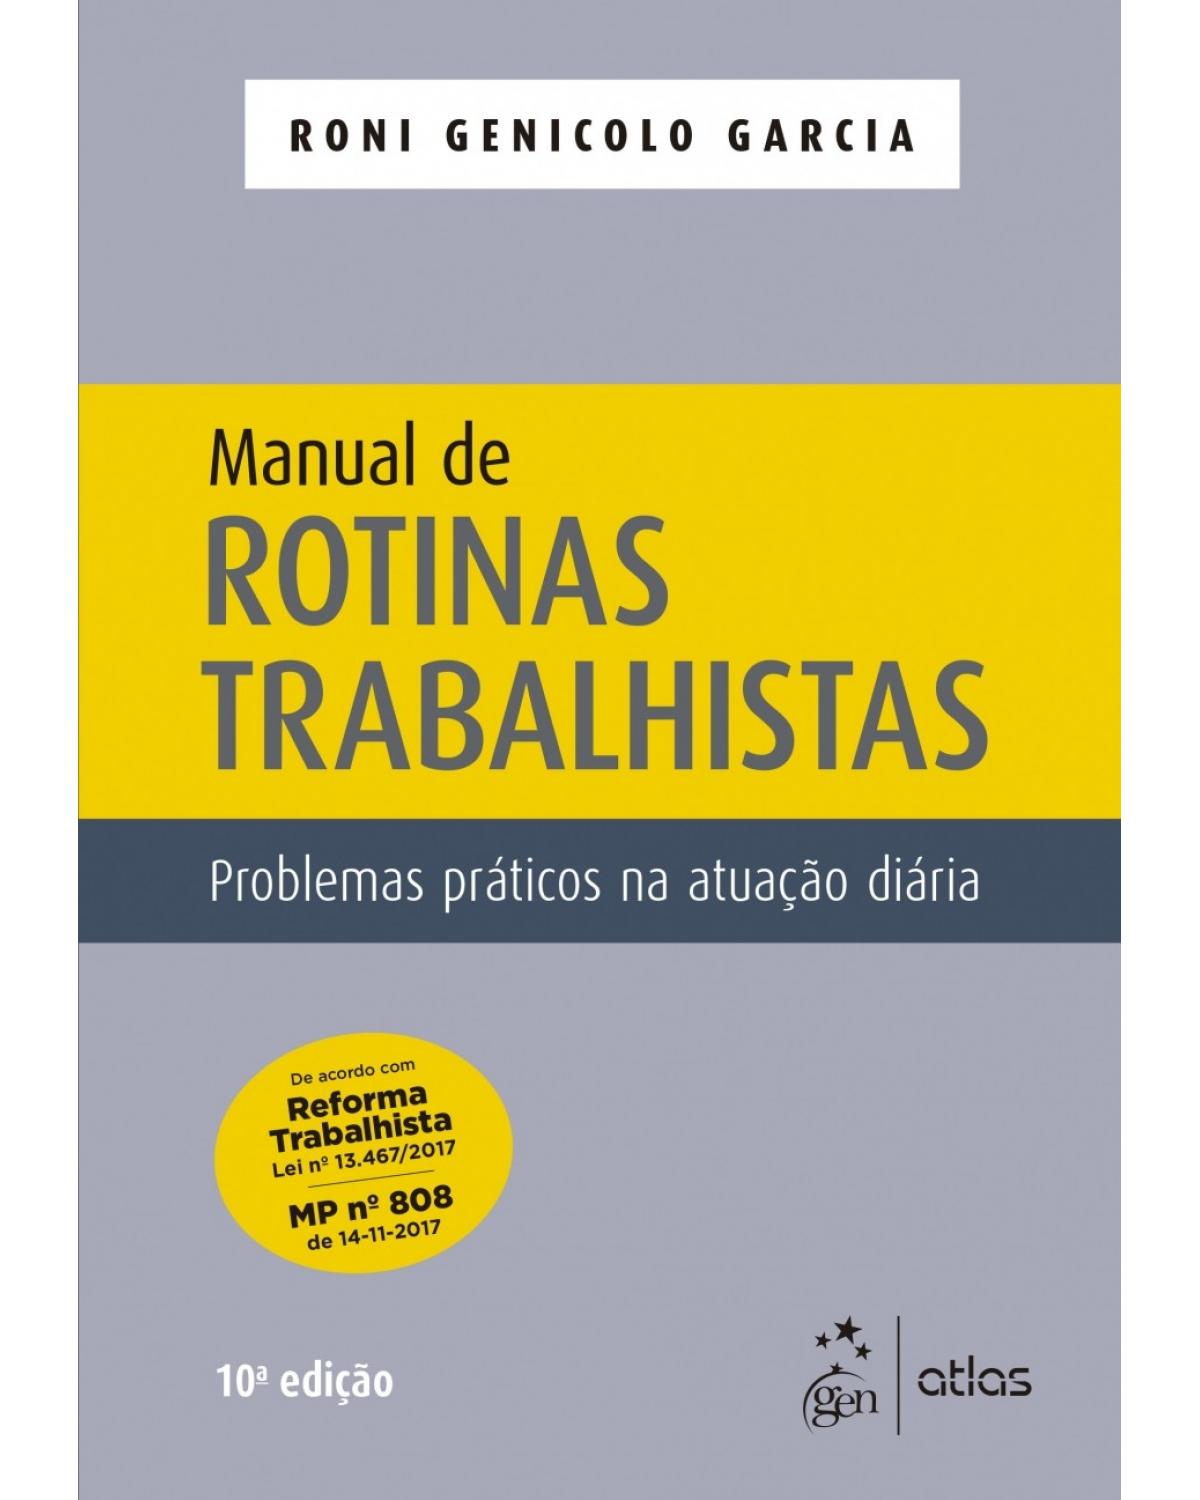 Manual de rotinas trabalhistas - problemas práticos na atuação diária - 10ª Edição | 2018